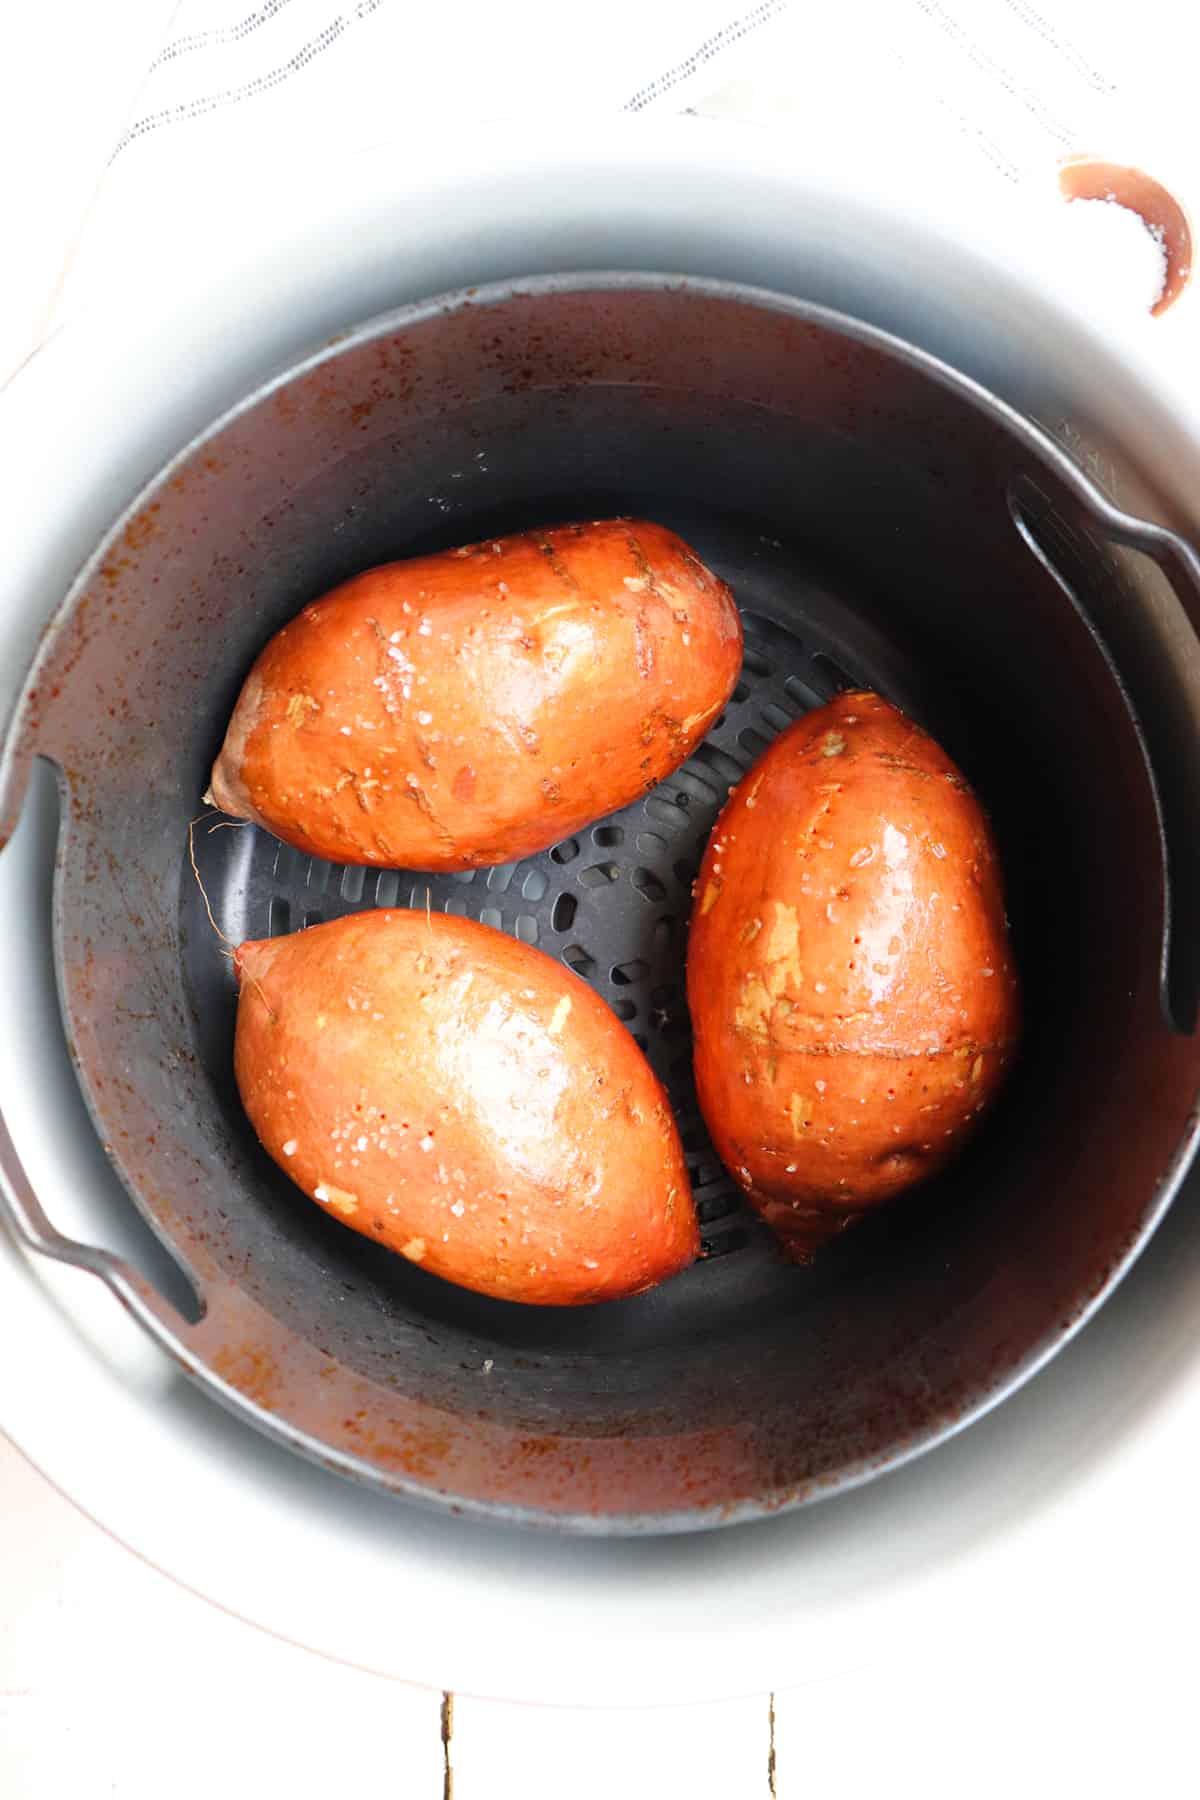 3 sweet potatoes in air fryer basket